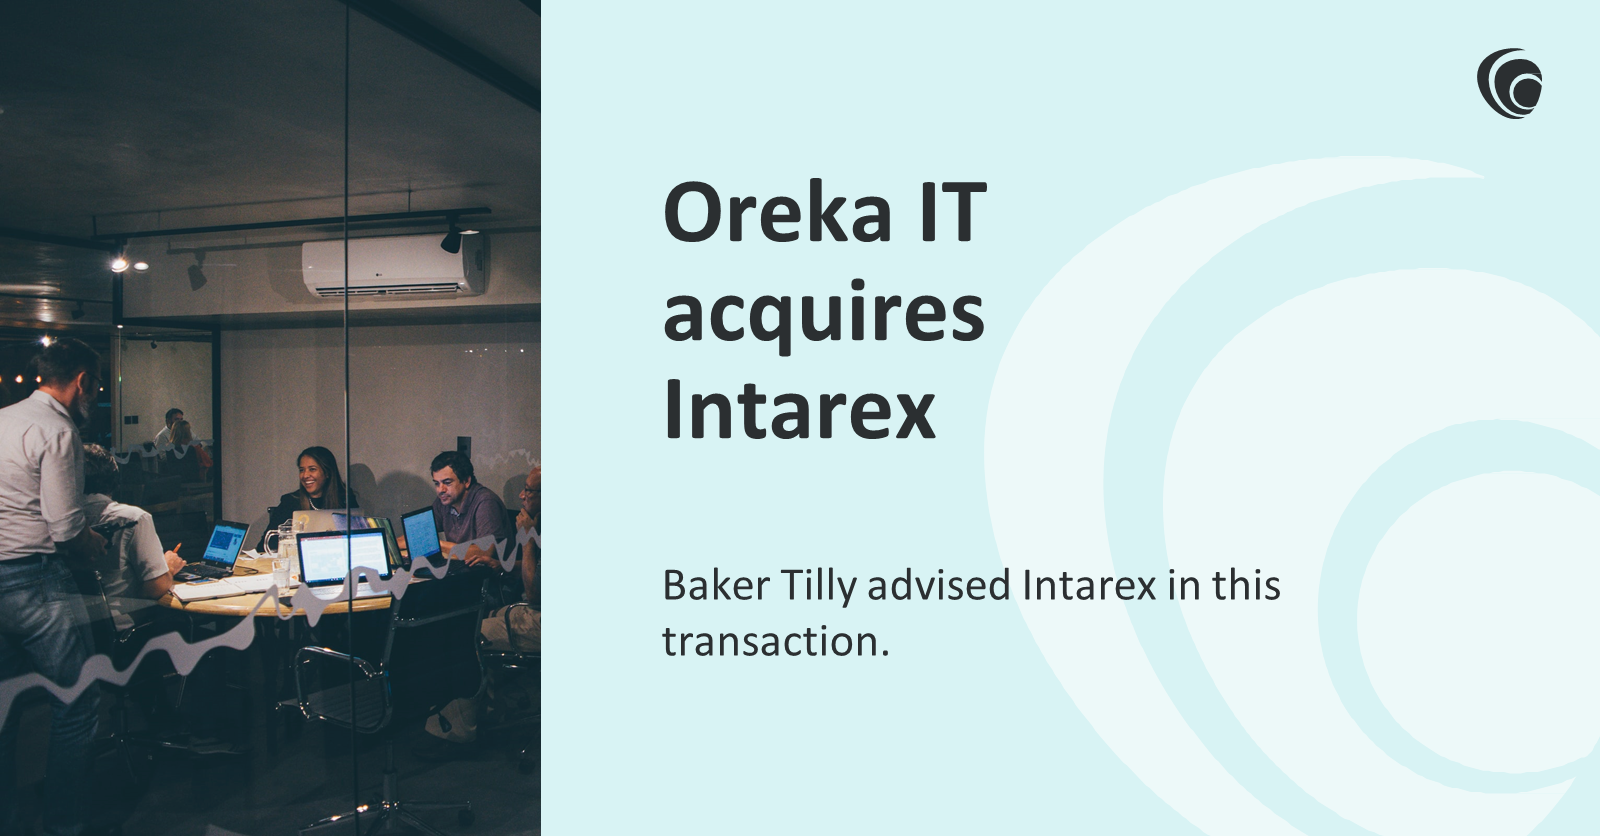 Oreka IT acquires Intarex